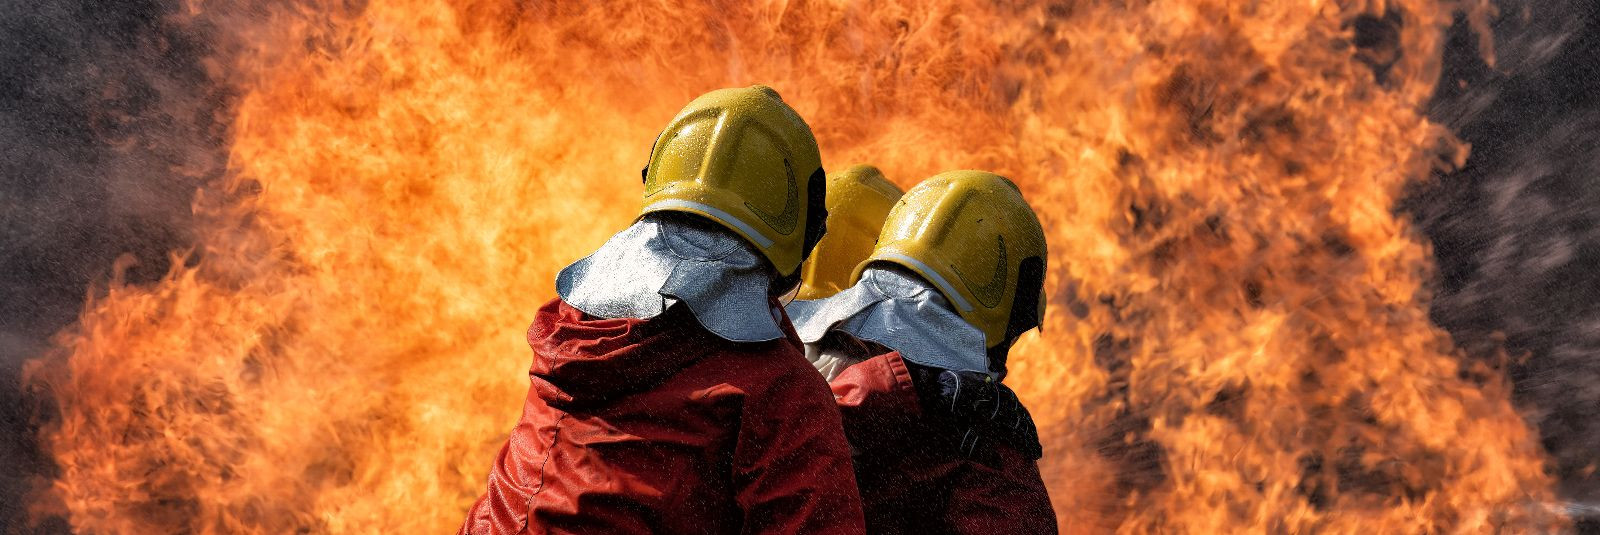 Tulekahju võib kujutada endast suurt ohtu nii eludele kui ka varale. Õnnetuse korral võib tule levik kiiresti levida ja tekitada märkimisväärset kahju. Selles o